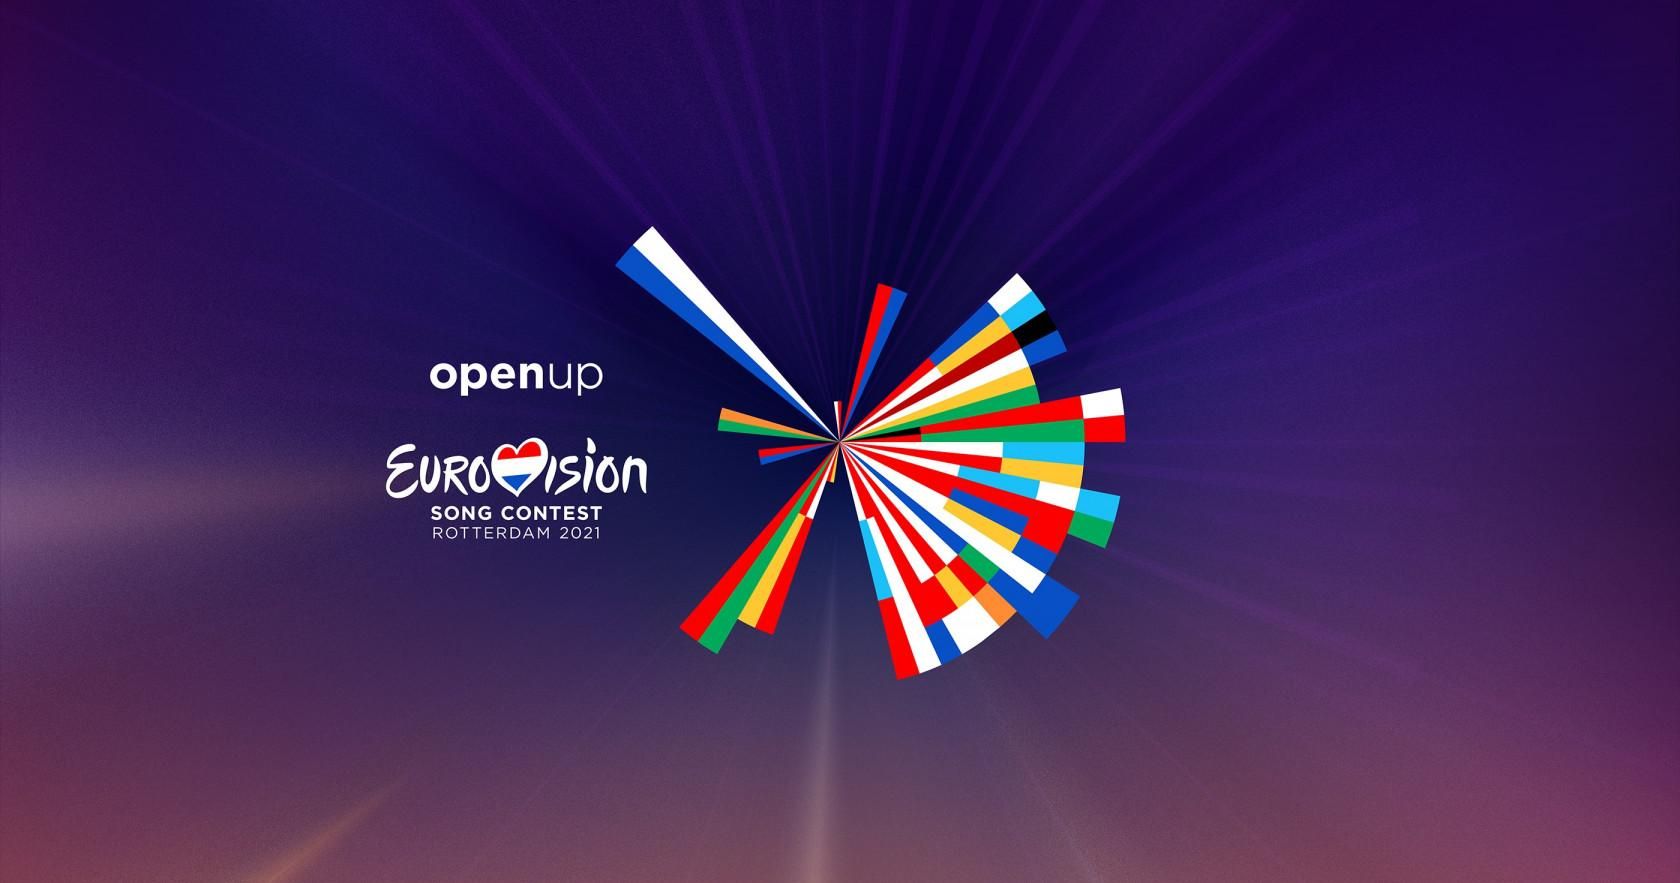 Евровидение 2021: в каком формате пройдет конкурс - новые данные